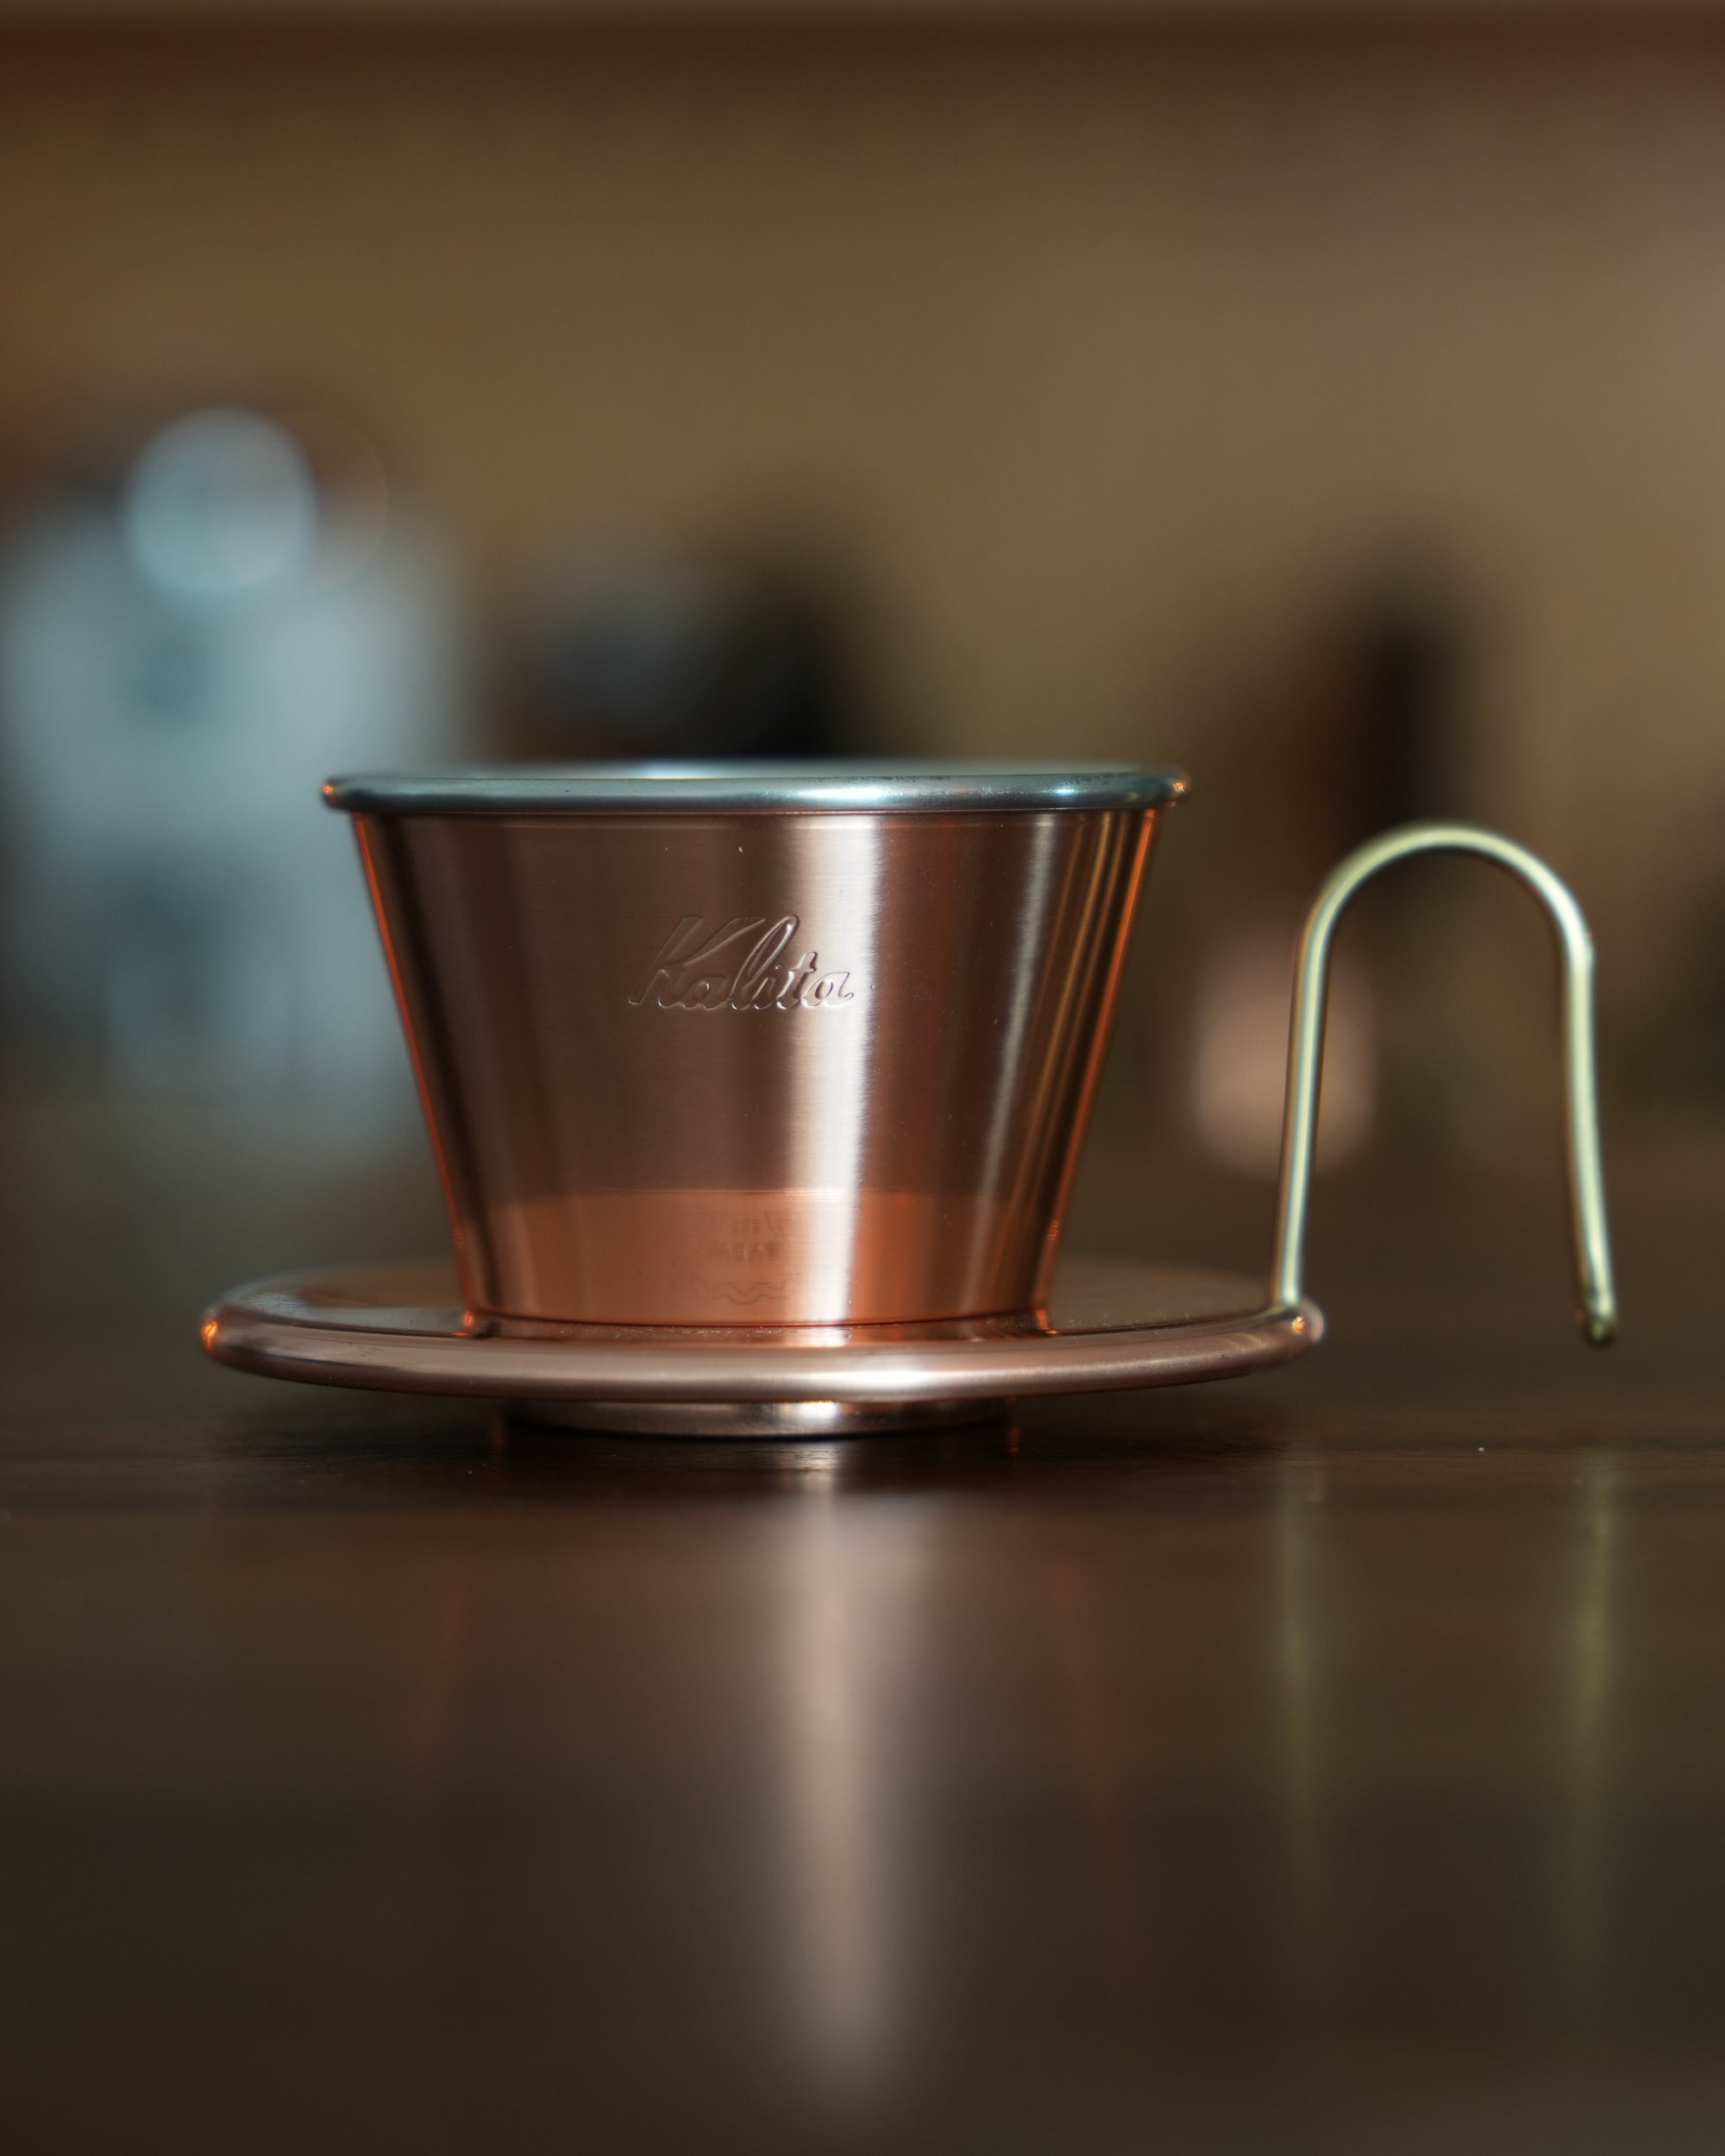 【総合評価】【新品未使用】NEIGHBORHOOD KALITA Measuring Cup 調理器具